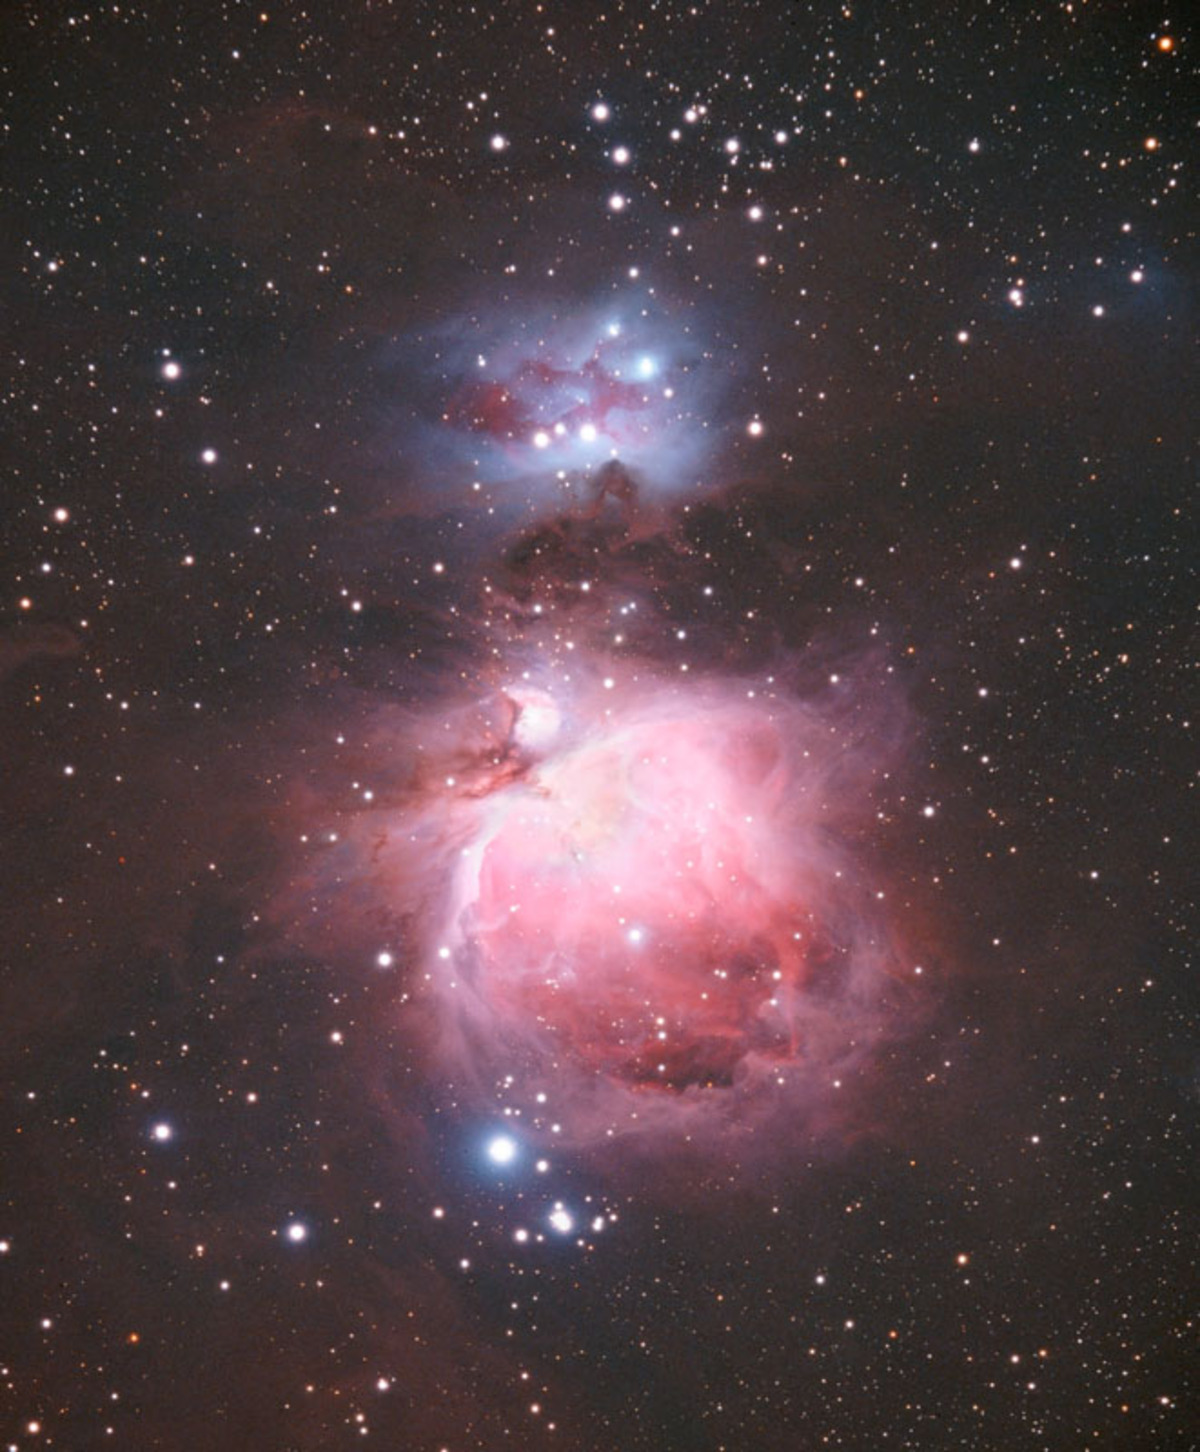 M42 and NGC1980